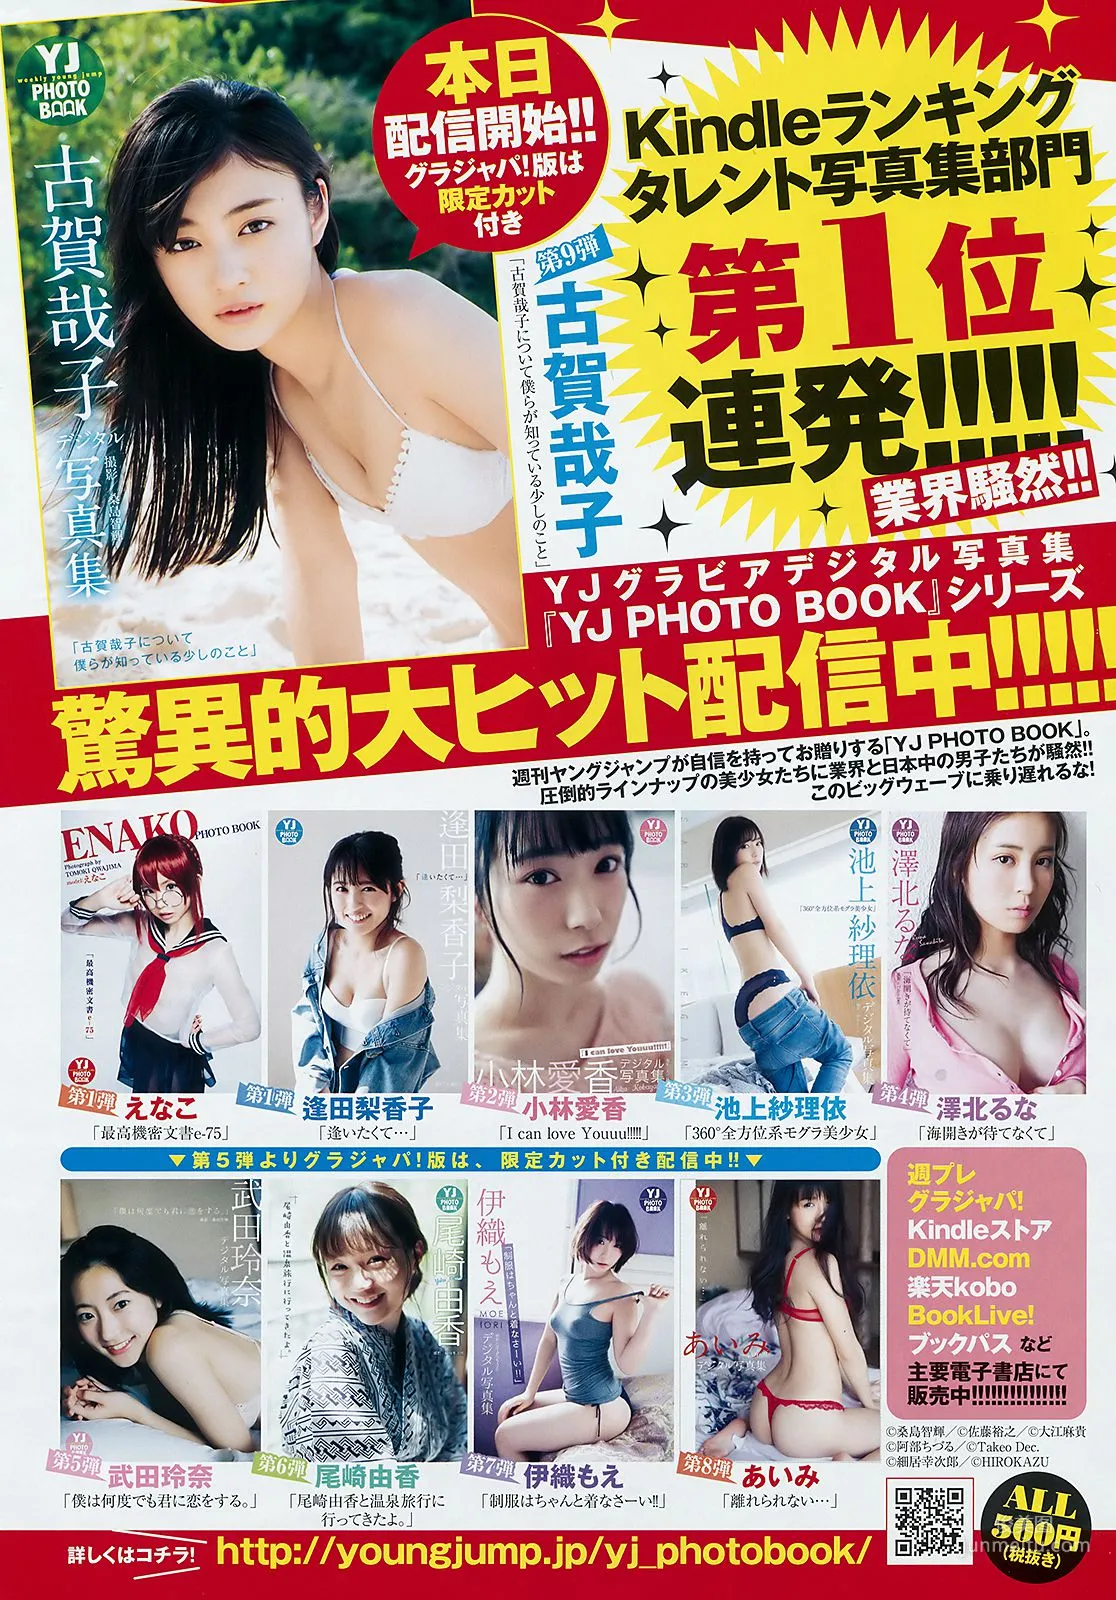 古賀哉子 りおちょん [Weekly Young Jump] 2018年No.26 写真杂志8